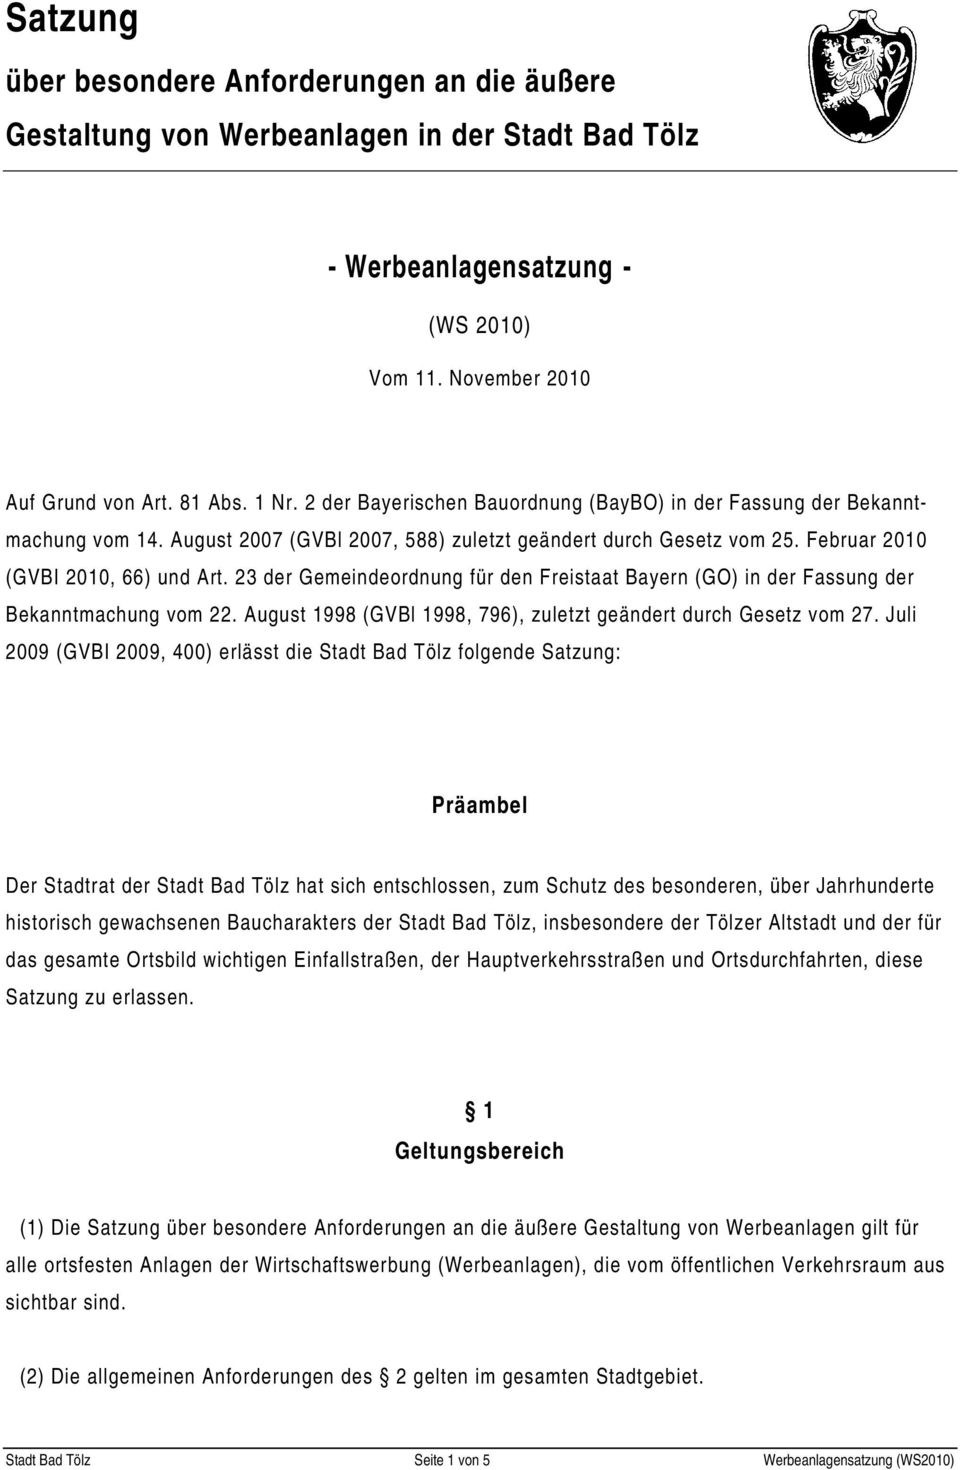 23 der Gemeindeordnung für den Freistaat Bayern (GO) in der Fassung der Bekanntmachung vom 22. August 1998 (GVBl 1998, 796), letzt geändert durch Gesetz vom 27.